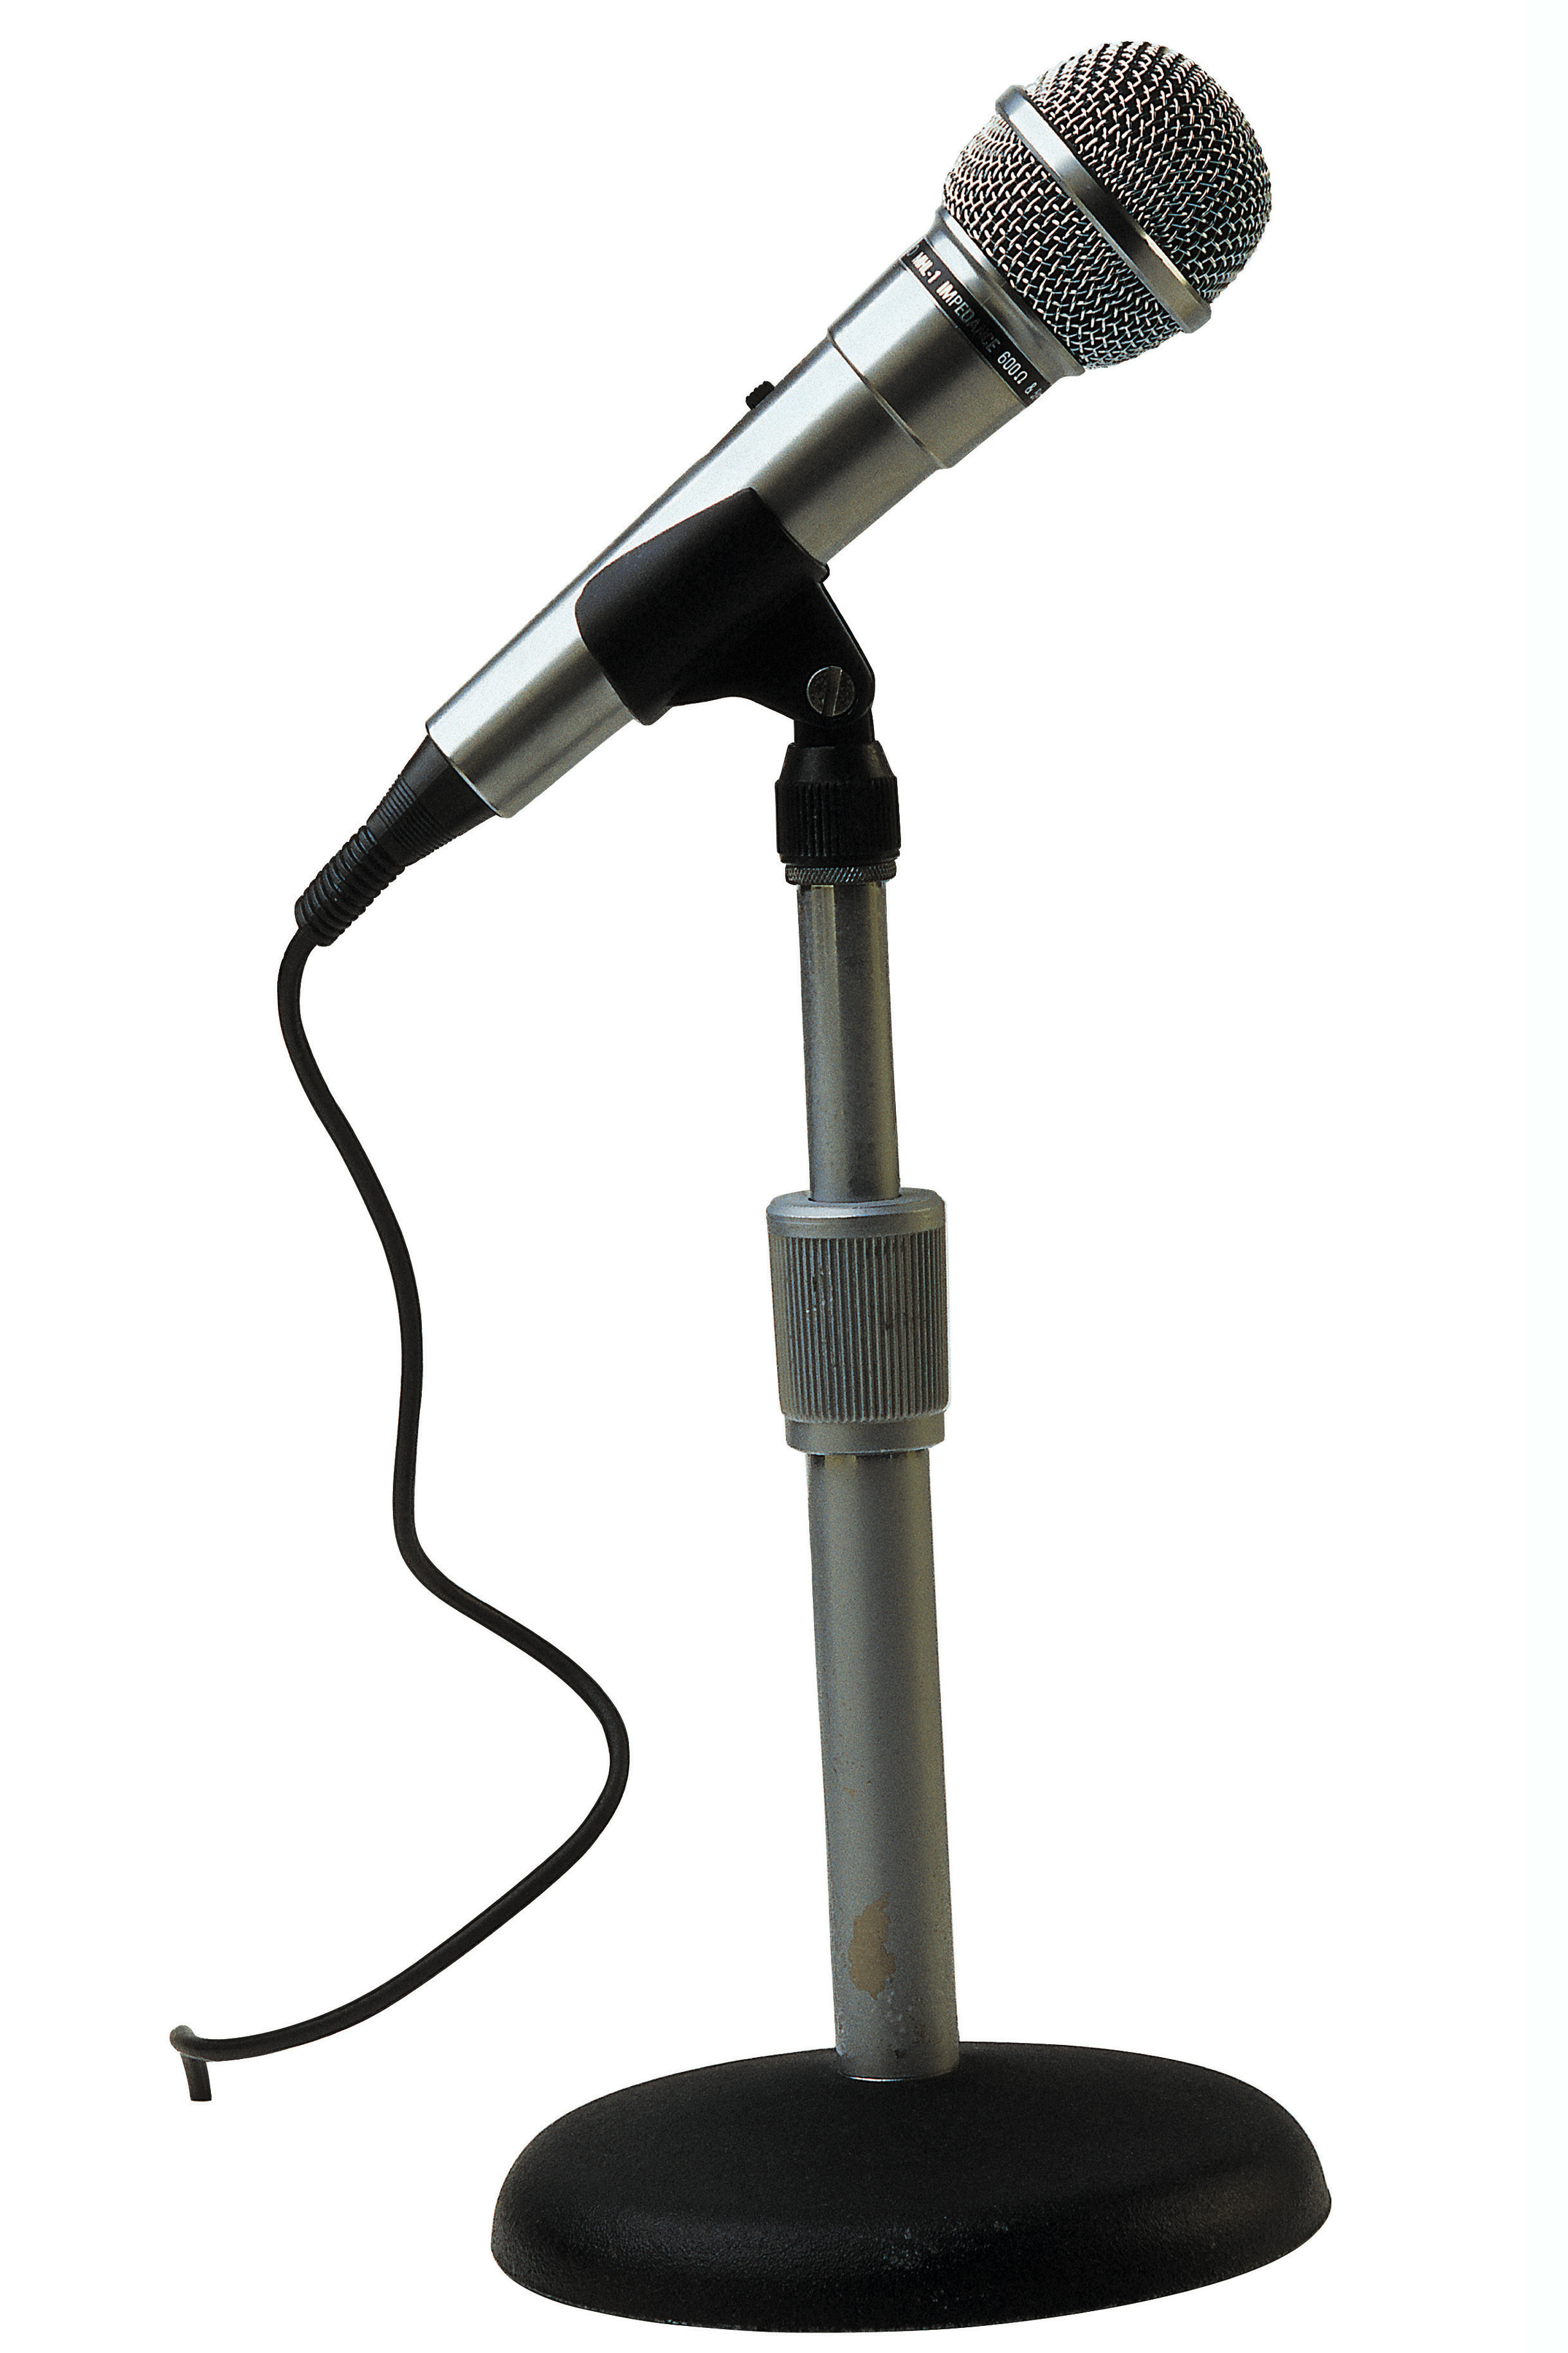 Esta imagen muestra un micrófono con pie